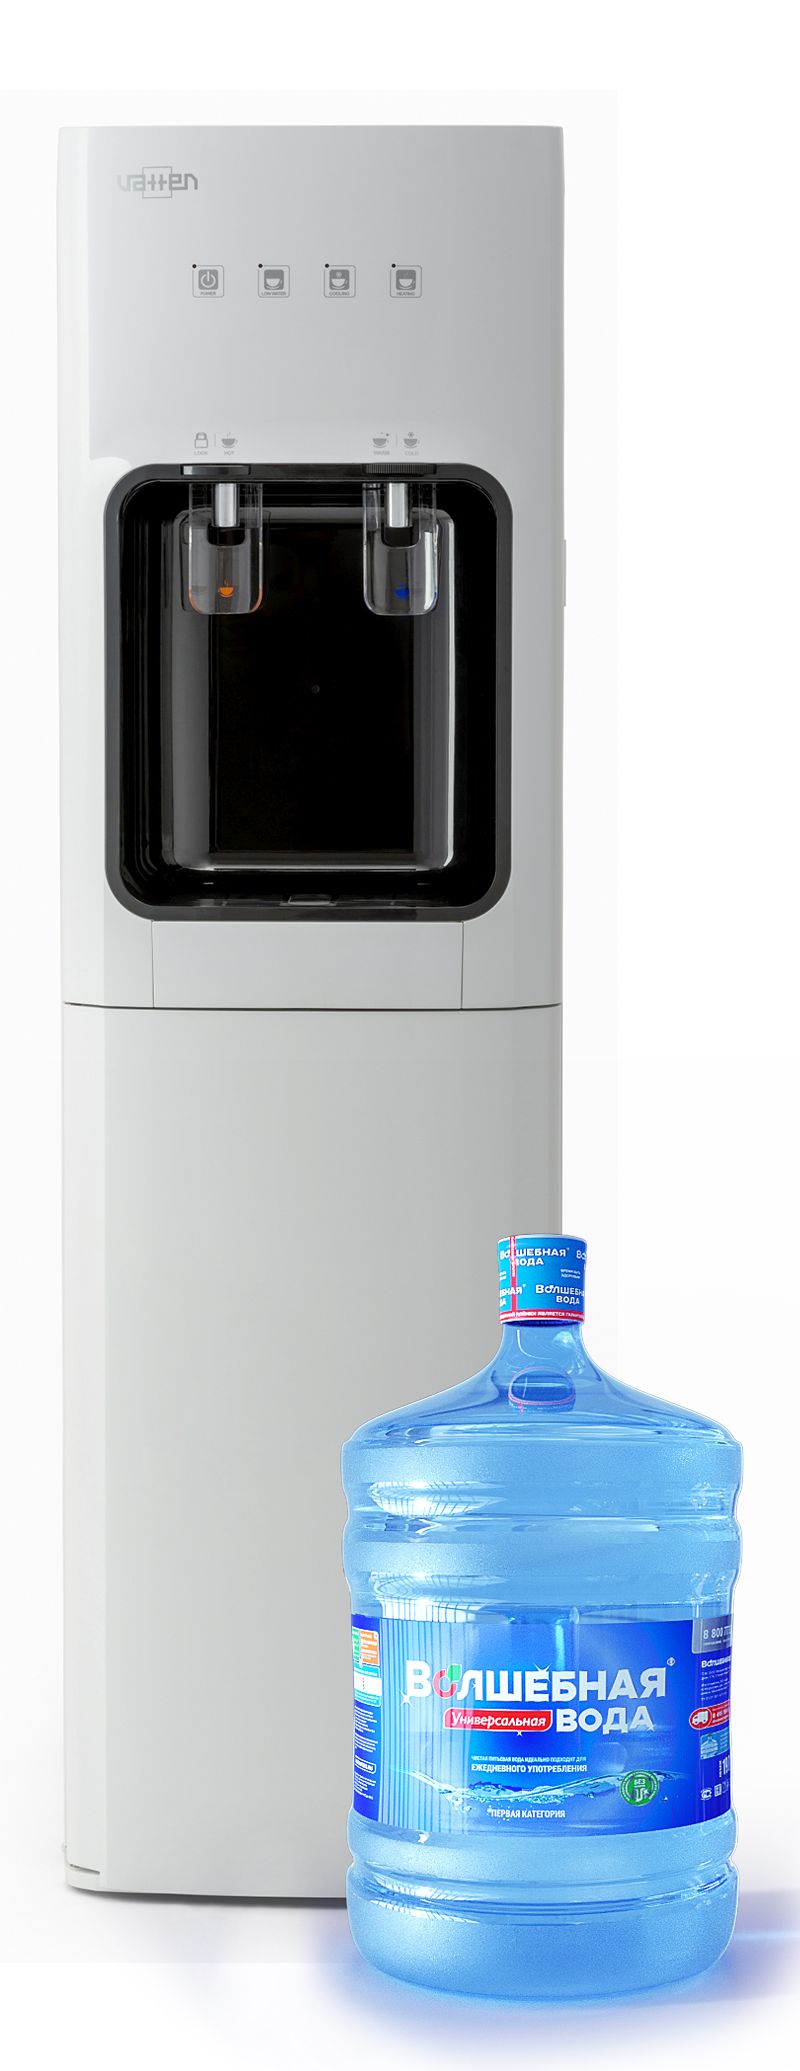  для воды напольный VATTEN L01WK с нижней загрузкой бутыли  .